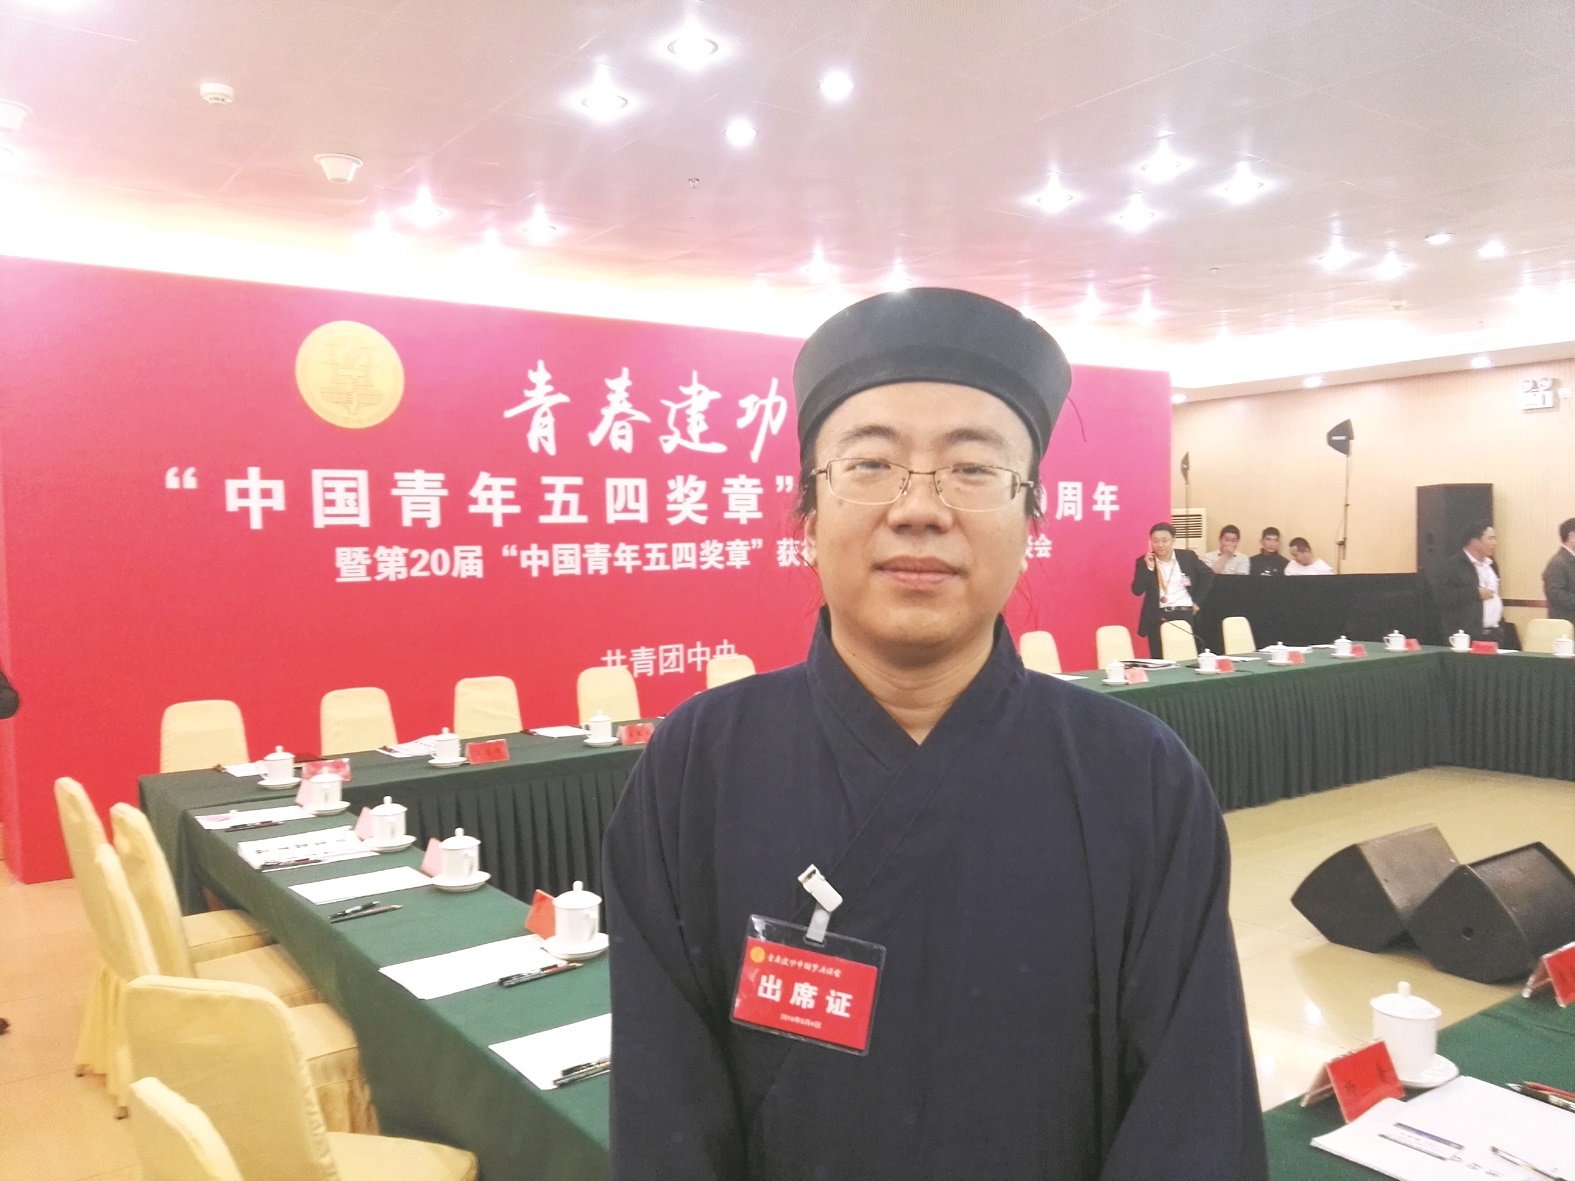 今年5月4日，“全真道长梁兴扬”收到共青团的邀请，到北京参加2016年优秀青年表彰座谈会，作为15名中国青年好网民之一，受到国家副主席李源潮的接见。